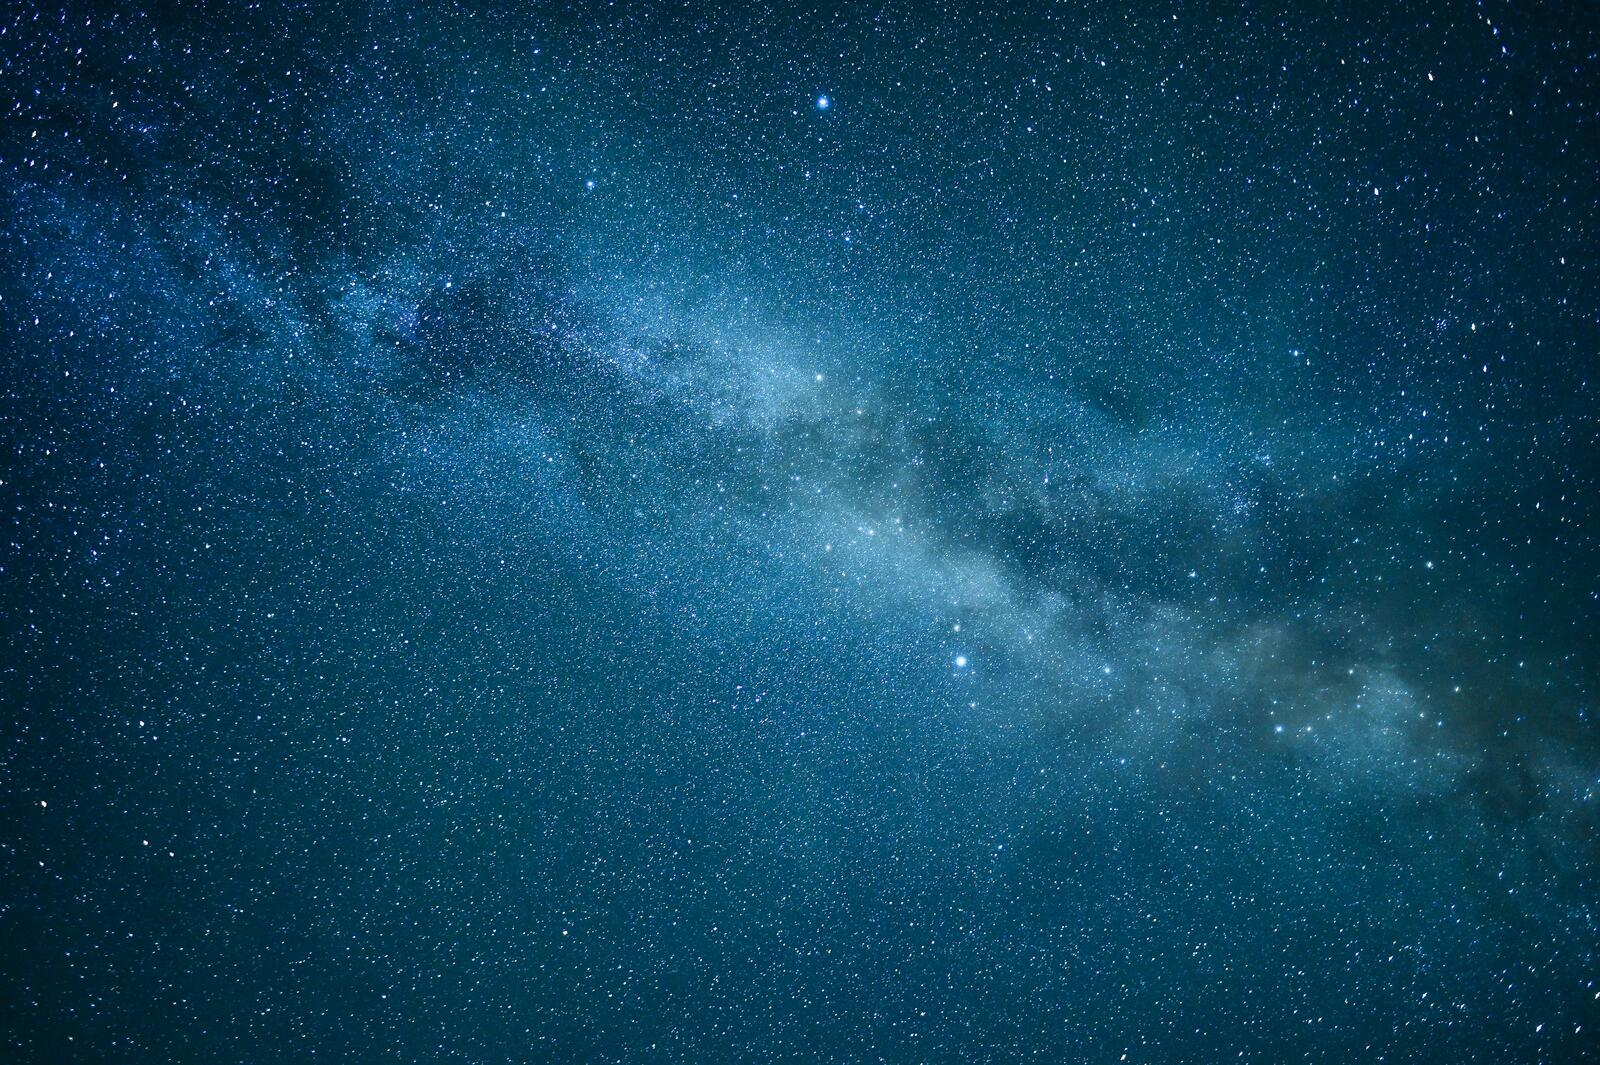 Бесплатное фото Синее небо с большим количеством звезд на нем